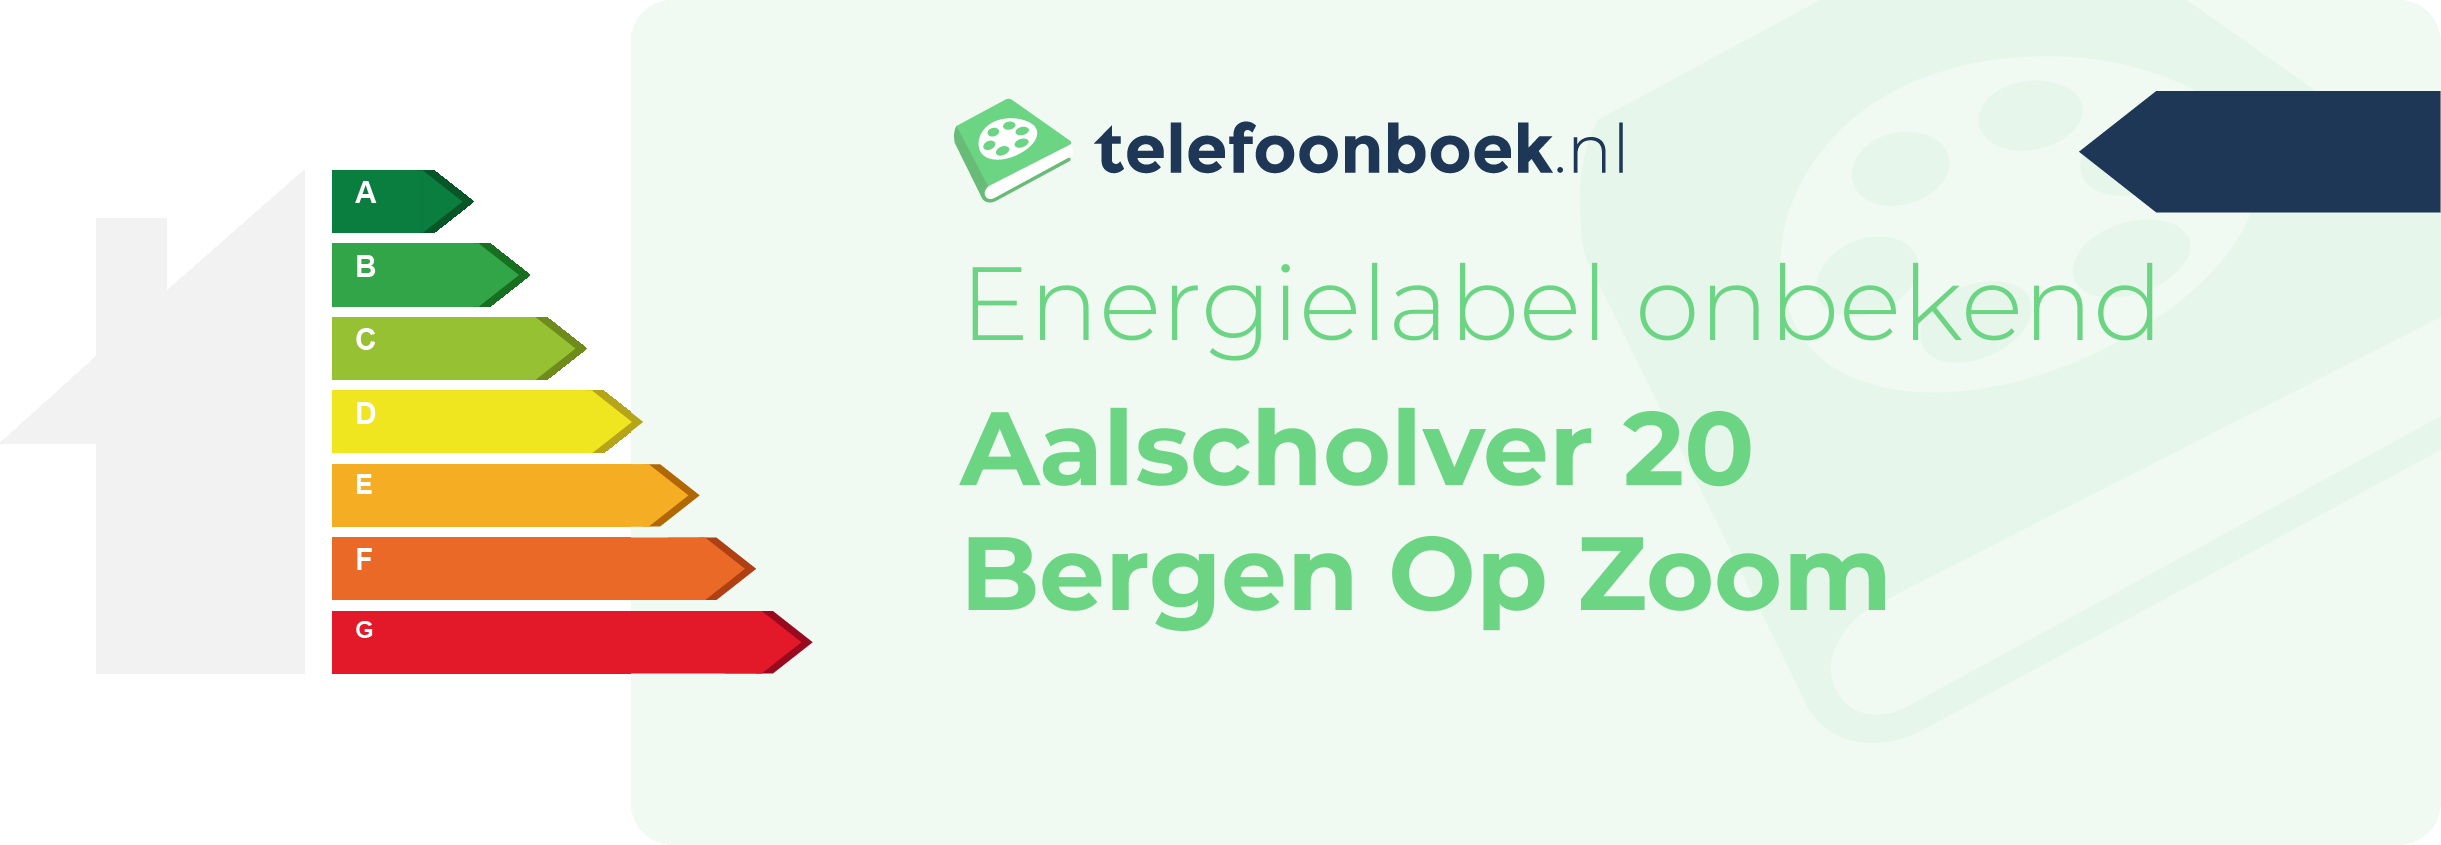 Energielabel Aalscholver 20 Bergen Op Zoom